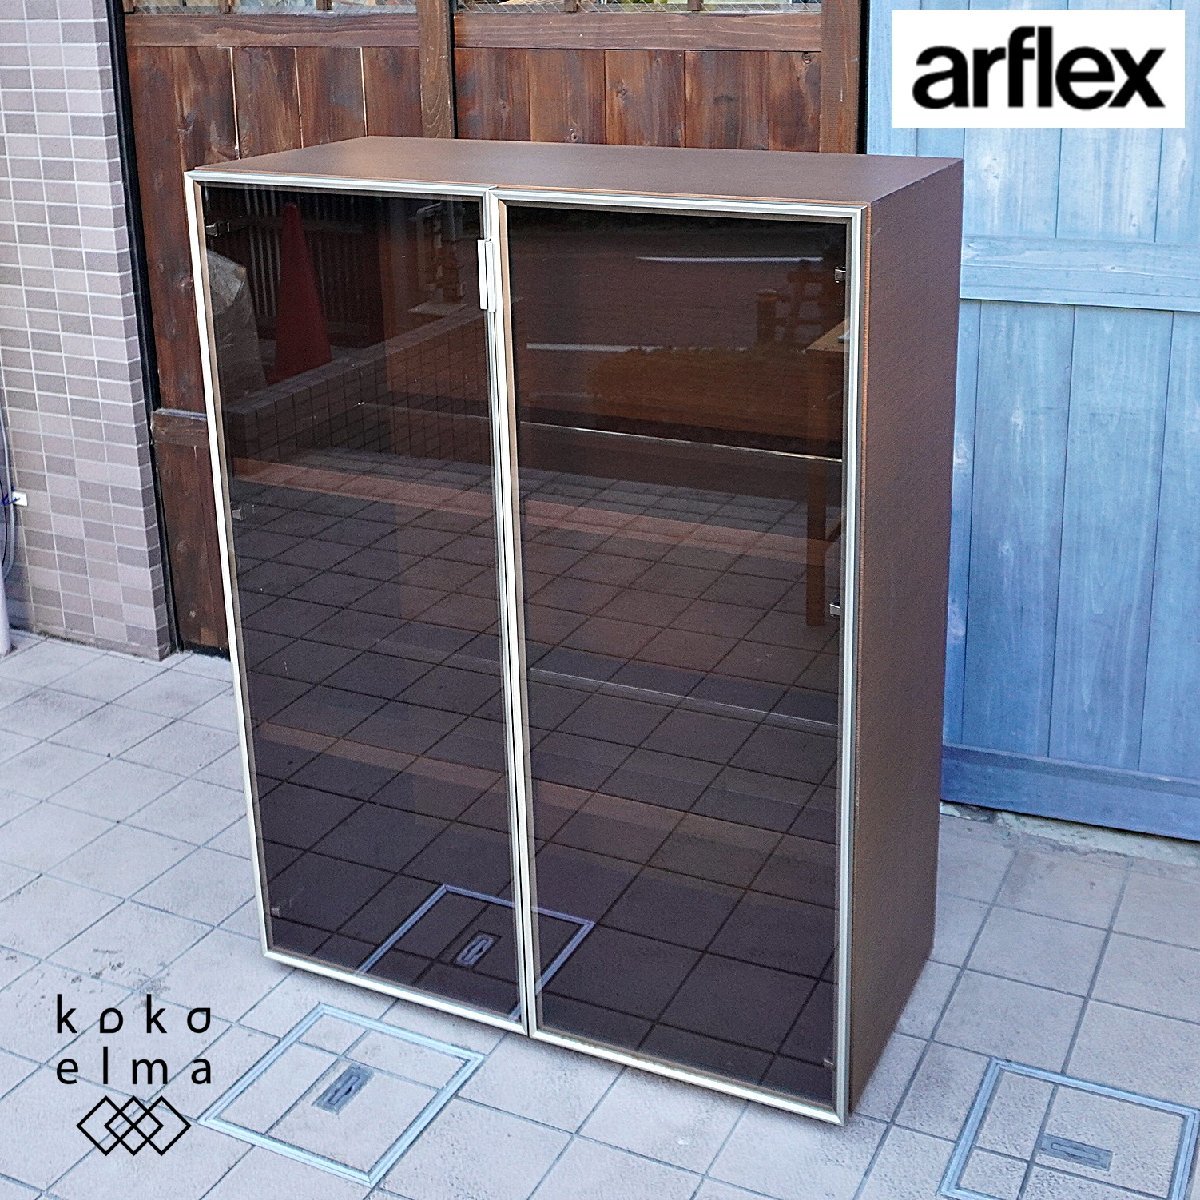 arflex アルフレックス C.C.09 ウォールナット ガラスキャビネット 2枚扉 飾り棚 キュリオケース モダン スタイリッシュ 高級 CL122